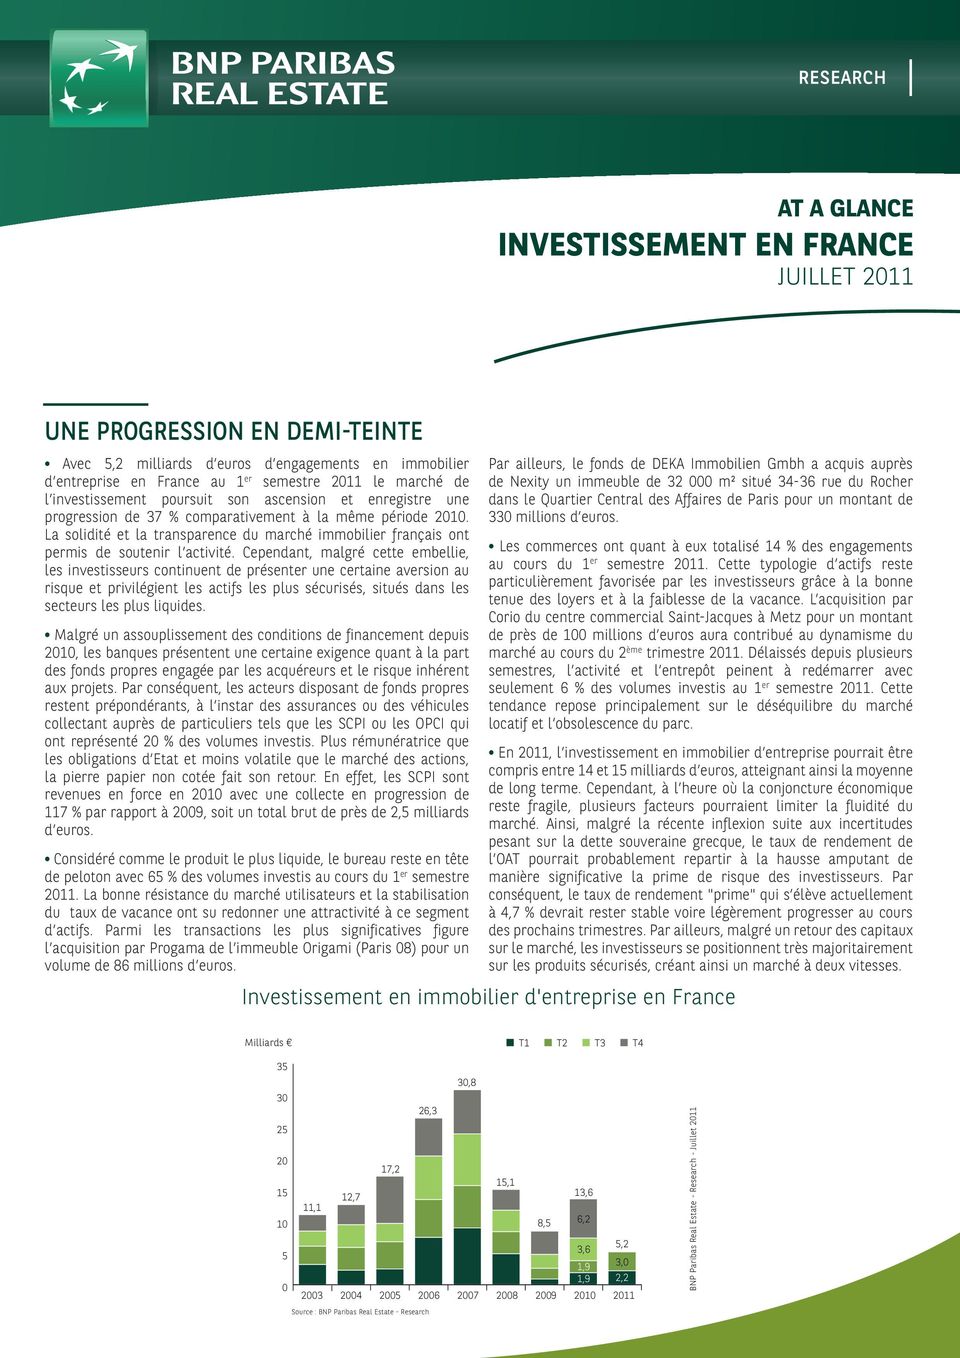 La solidité et la transparence du marché immobilier français ont permis de soutenir l activité.